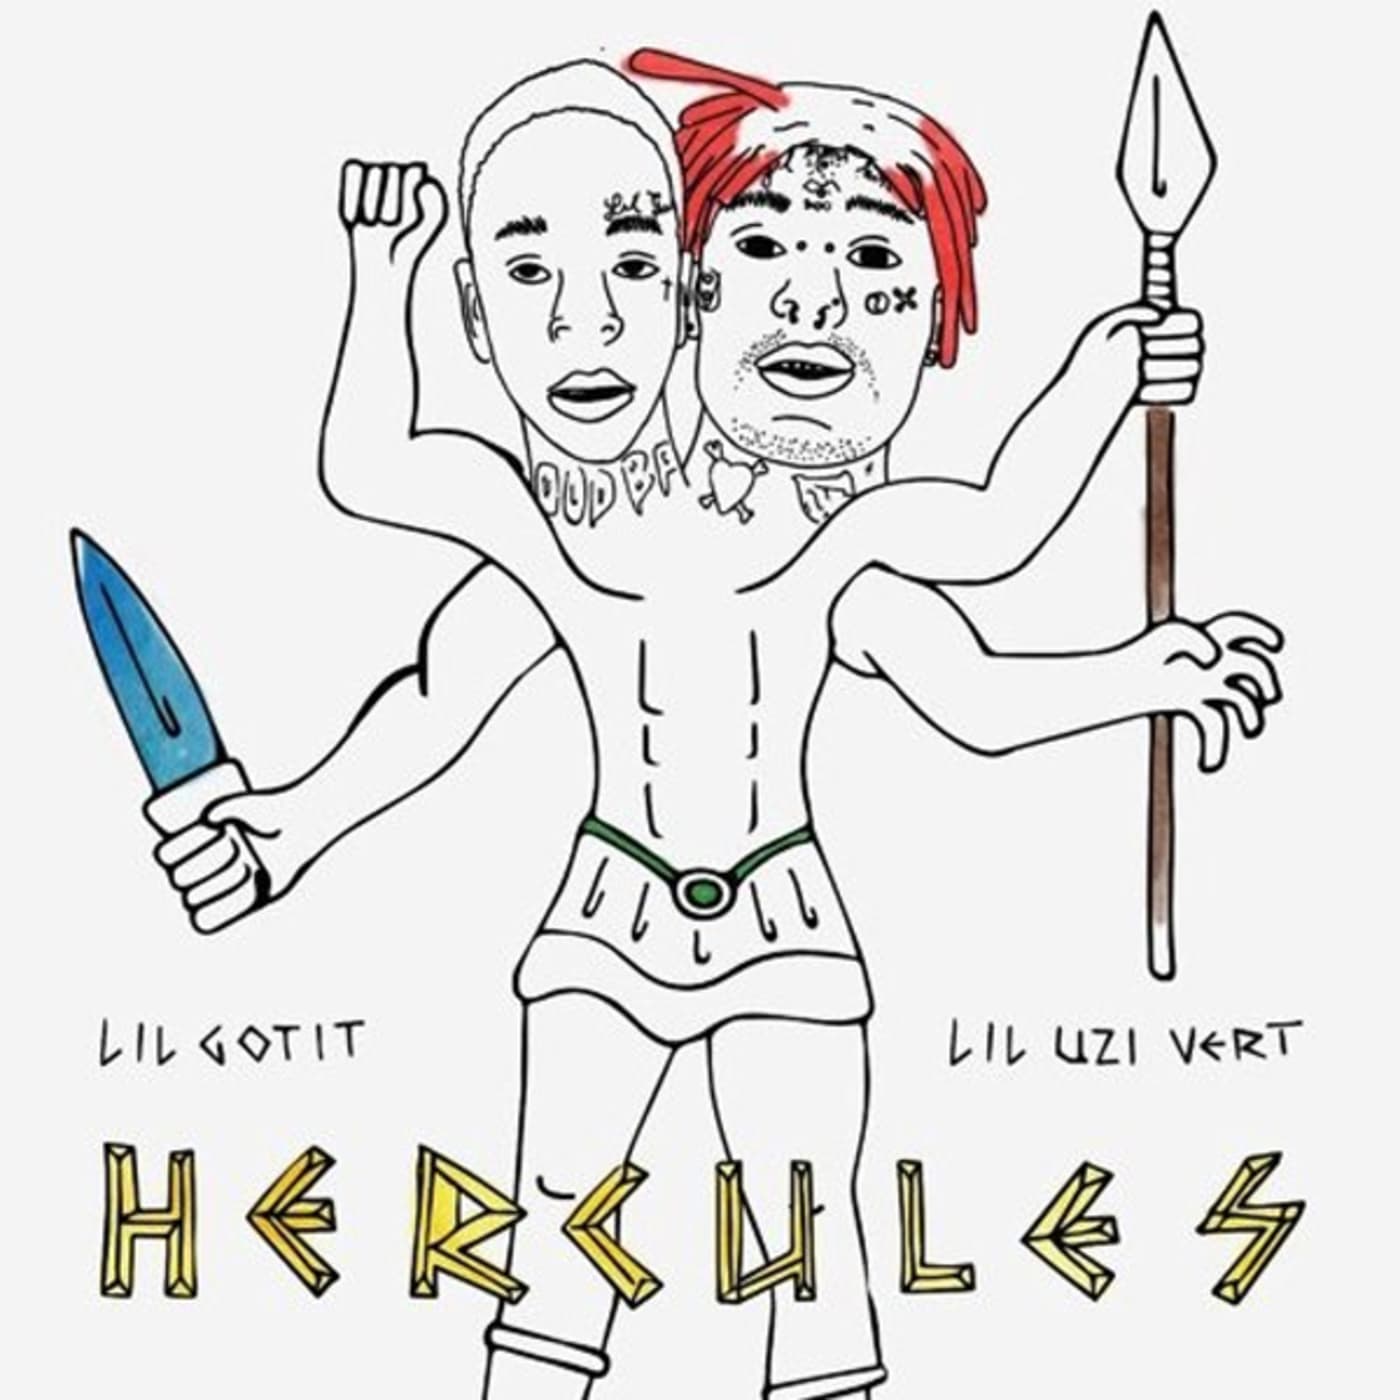 Lil Gotit and Lil Uzi Vert